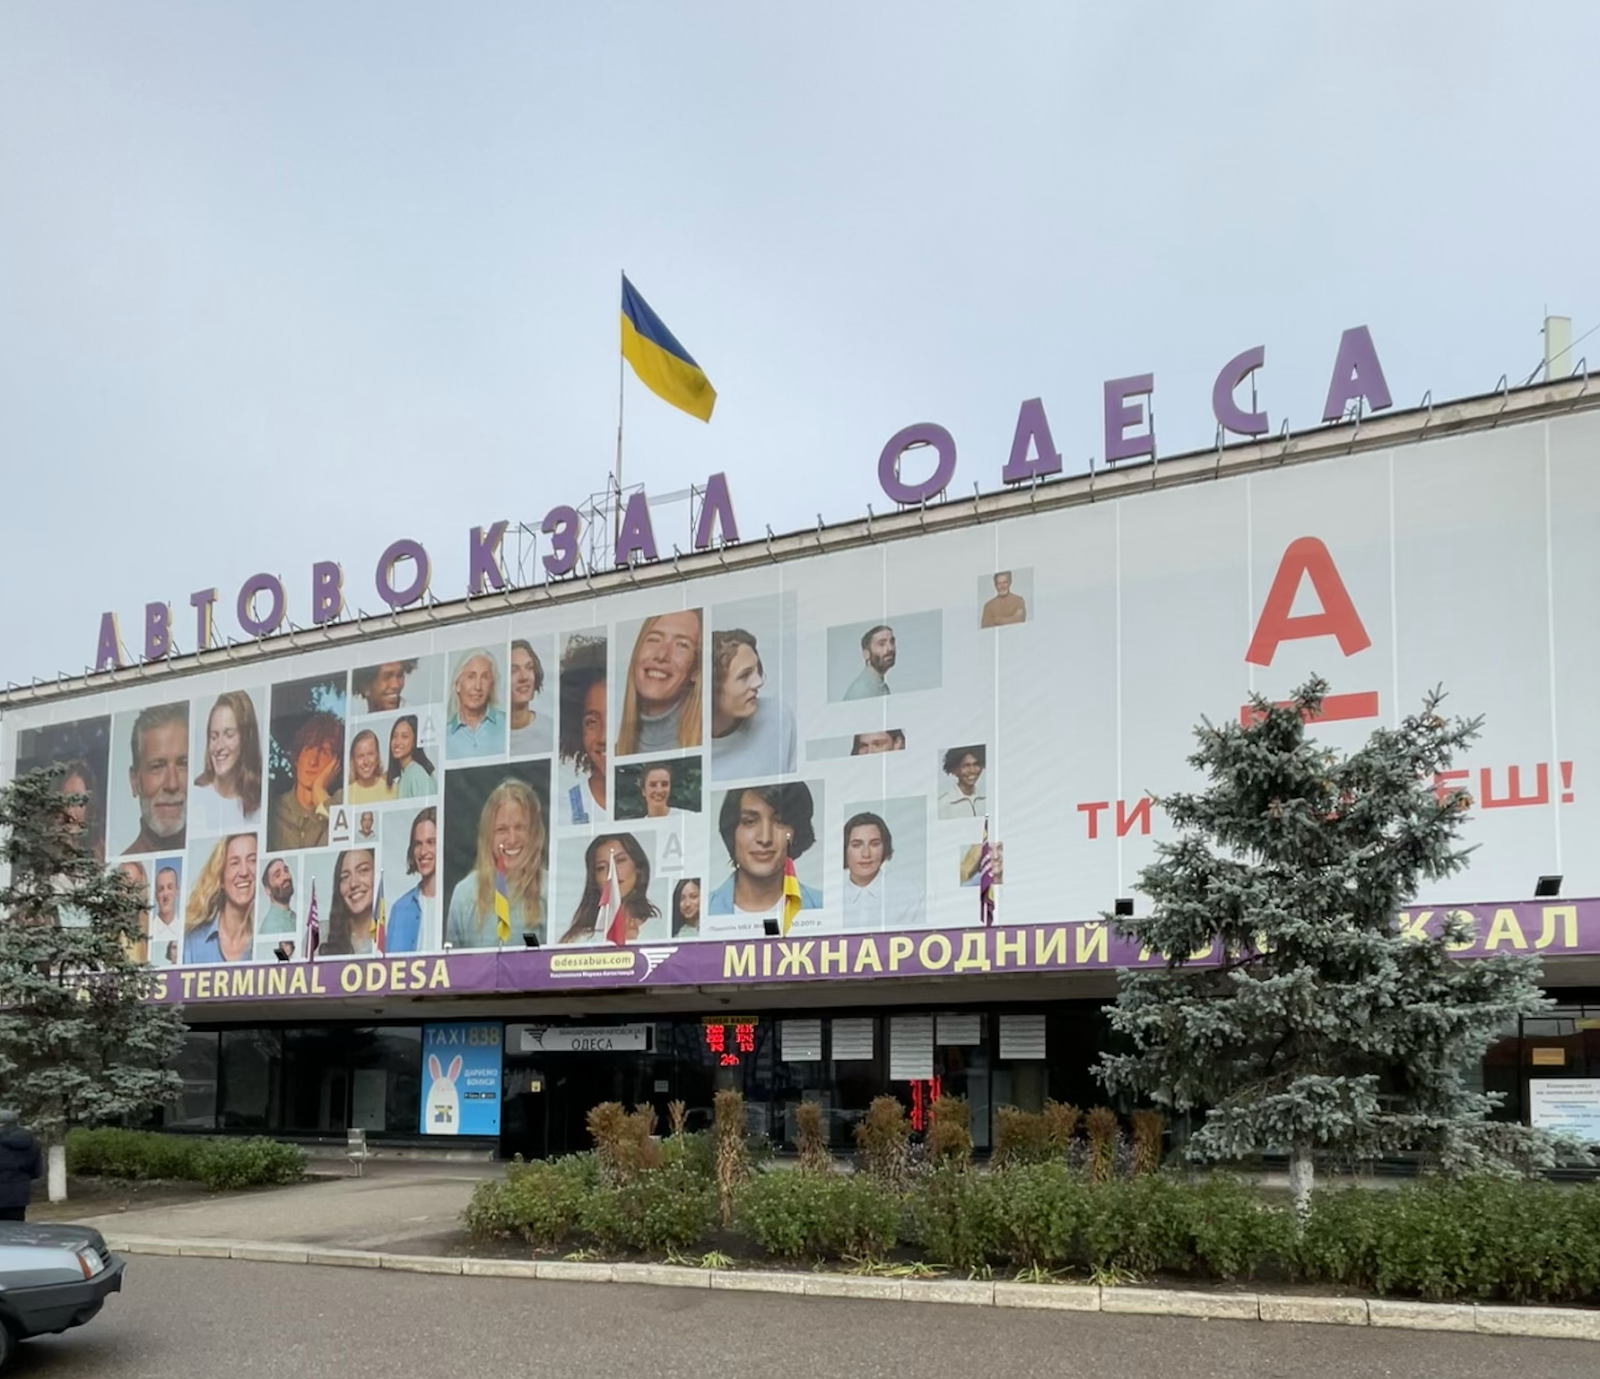 Как узнать цены на билеты на автовокзале Одессы?